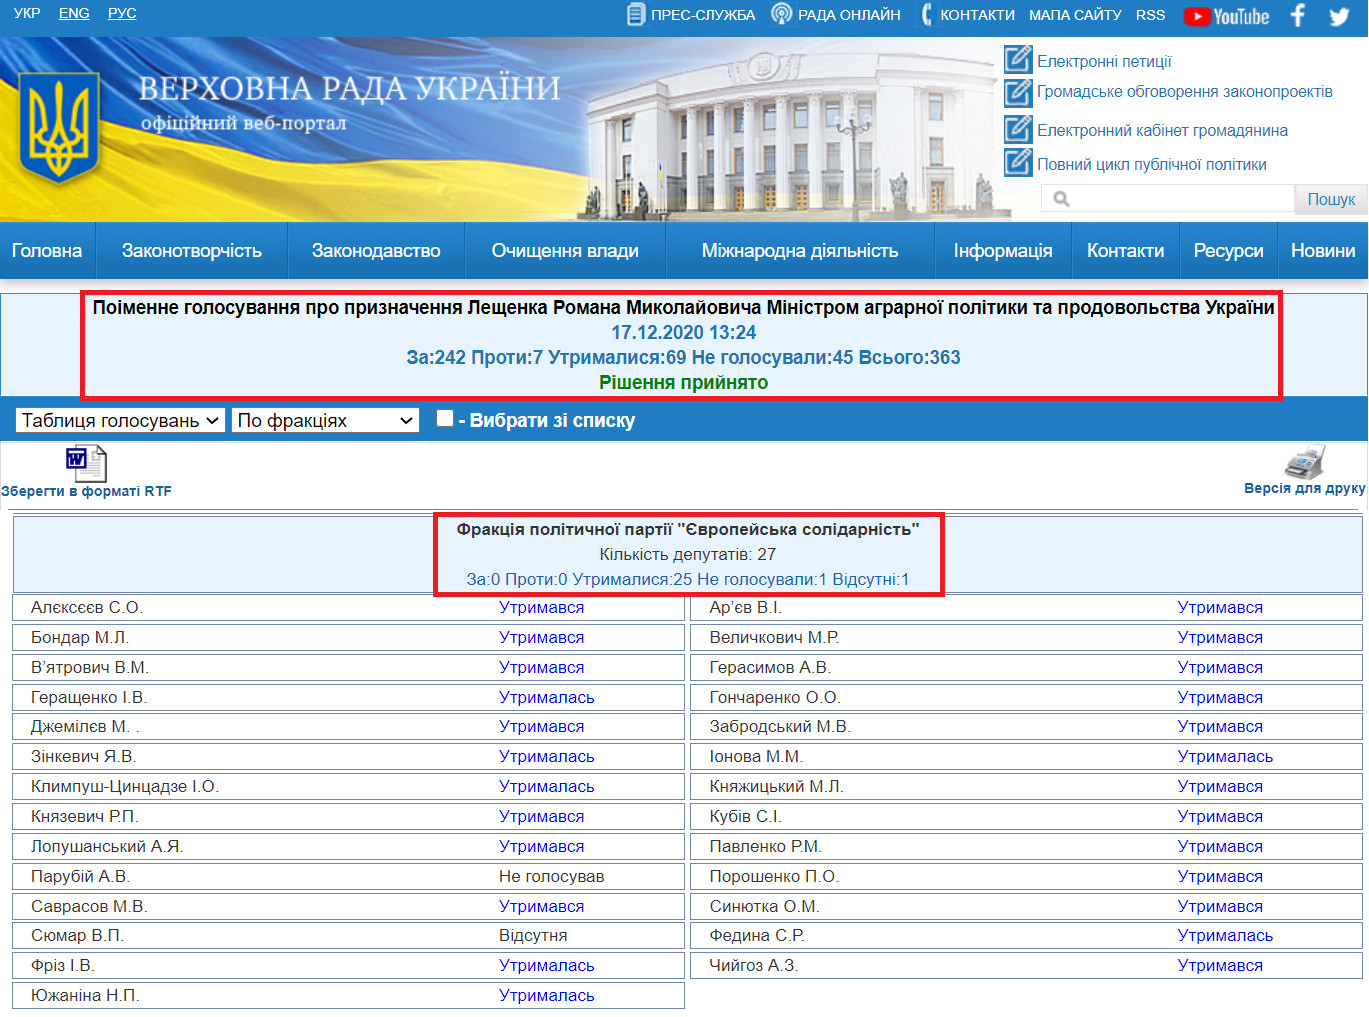 http://w1.c1.rada.gov.ua/pls/radan_gs09/ns_golos?g_id=8802